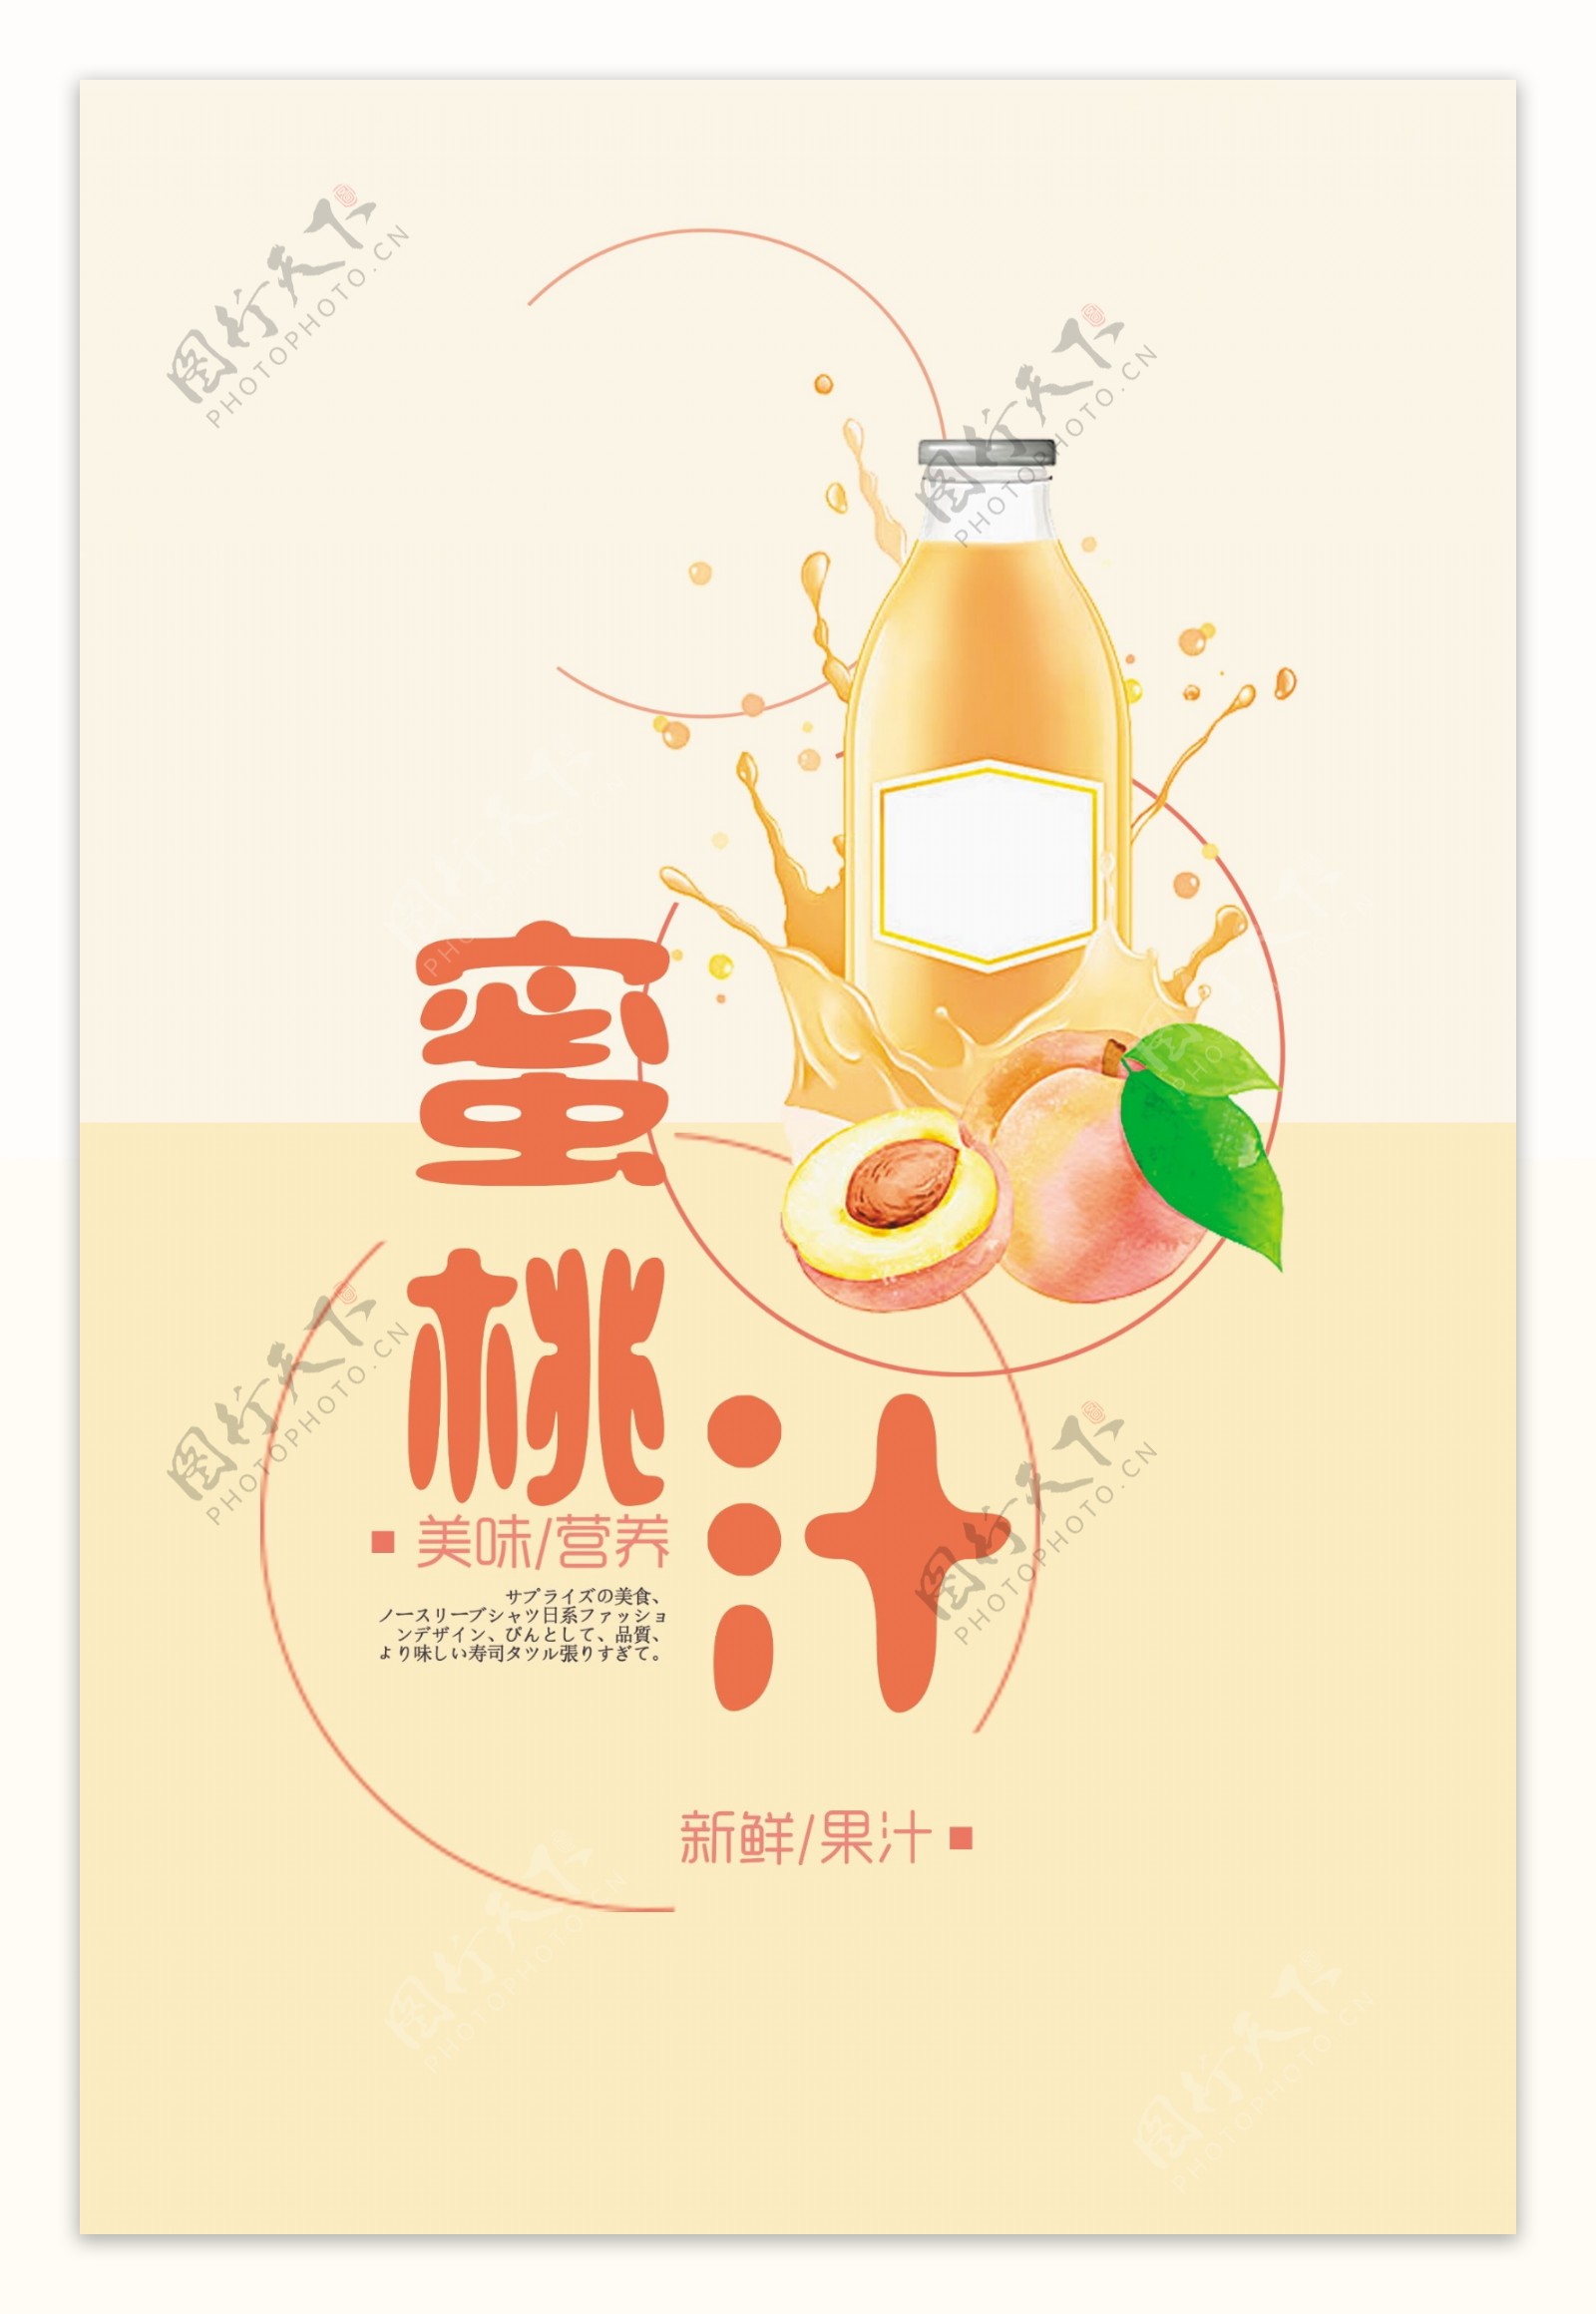 清新甜蜜桃汁宣传海报